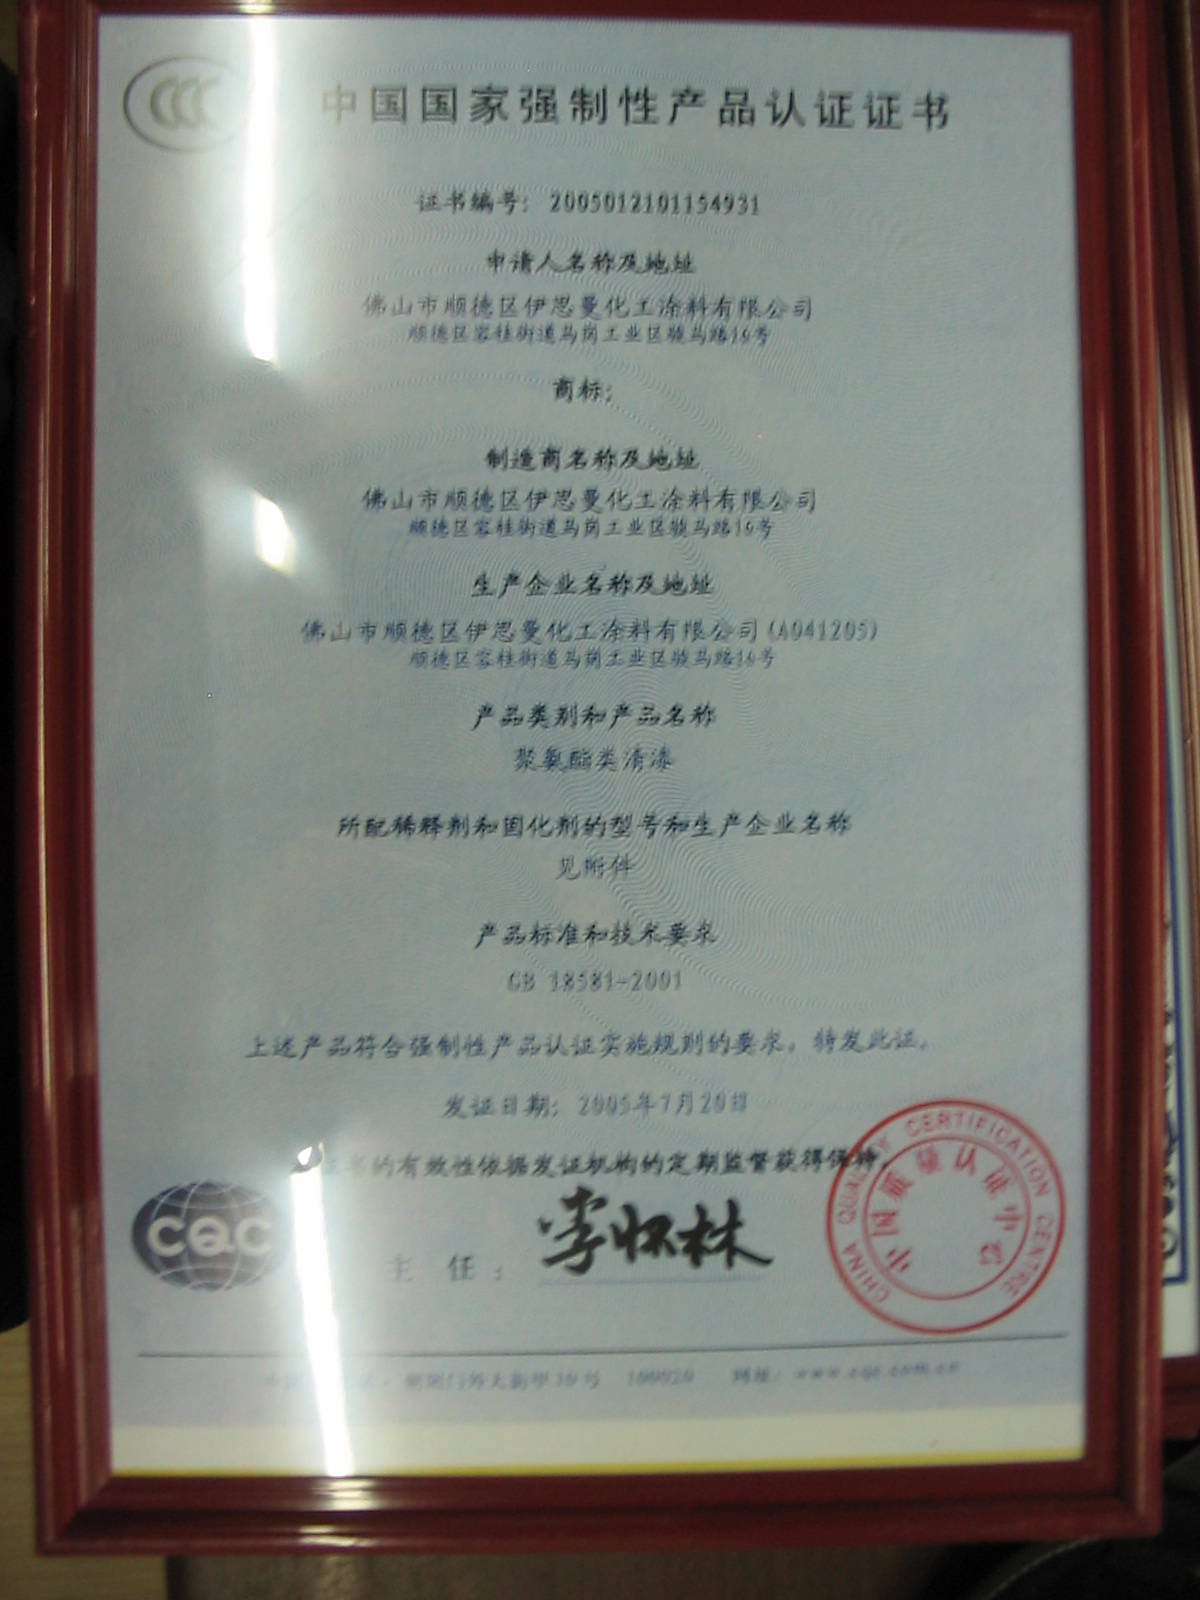 3C认证 - 伊思曼艺术涂料 - 九正建材网(中国建材第一网)